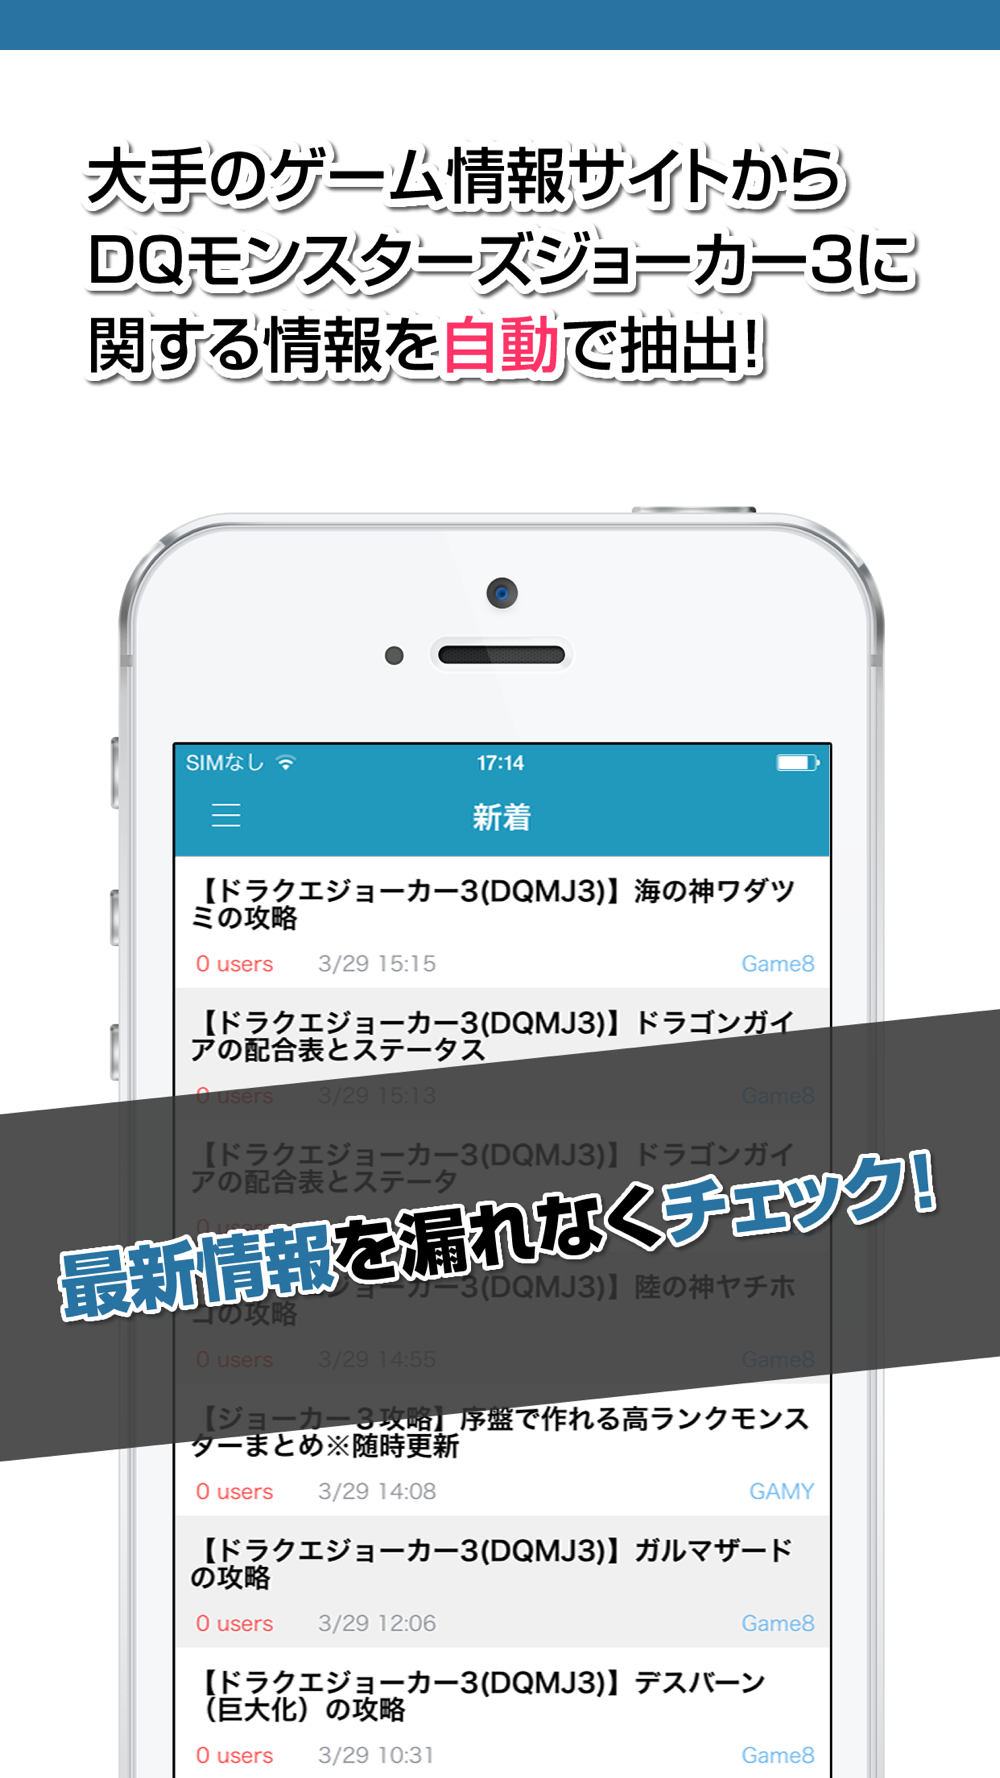 攻略ニュースまとめ For ドラゴンクエストモンスターズ ジョーカー3dqmj3 Free Download App For Iphone Steprimo Com